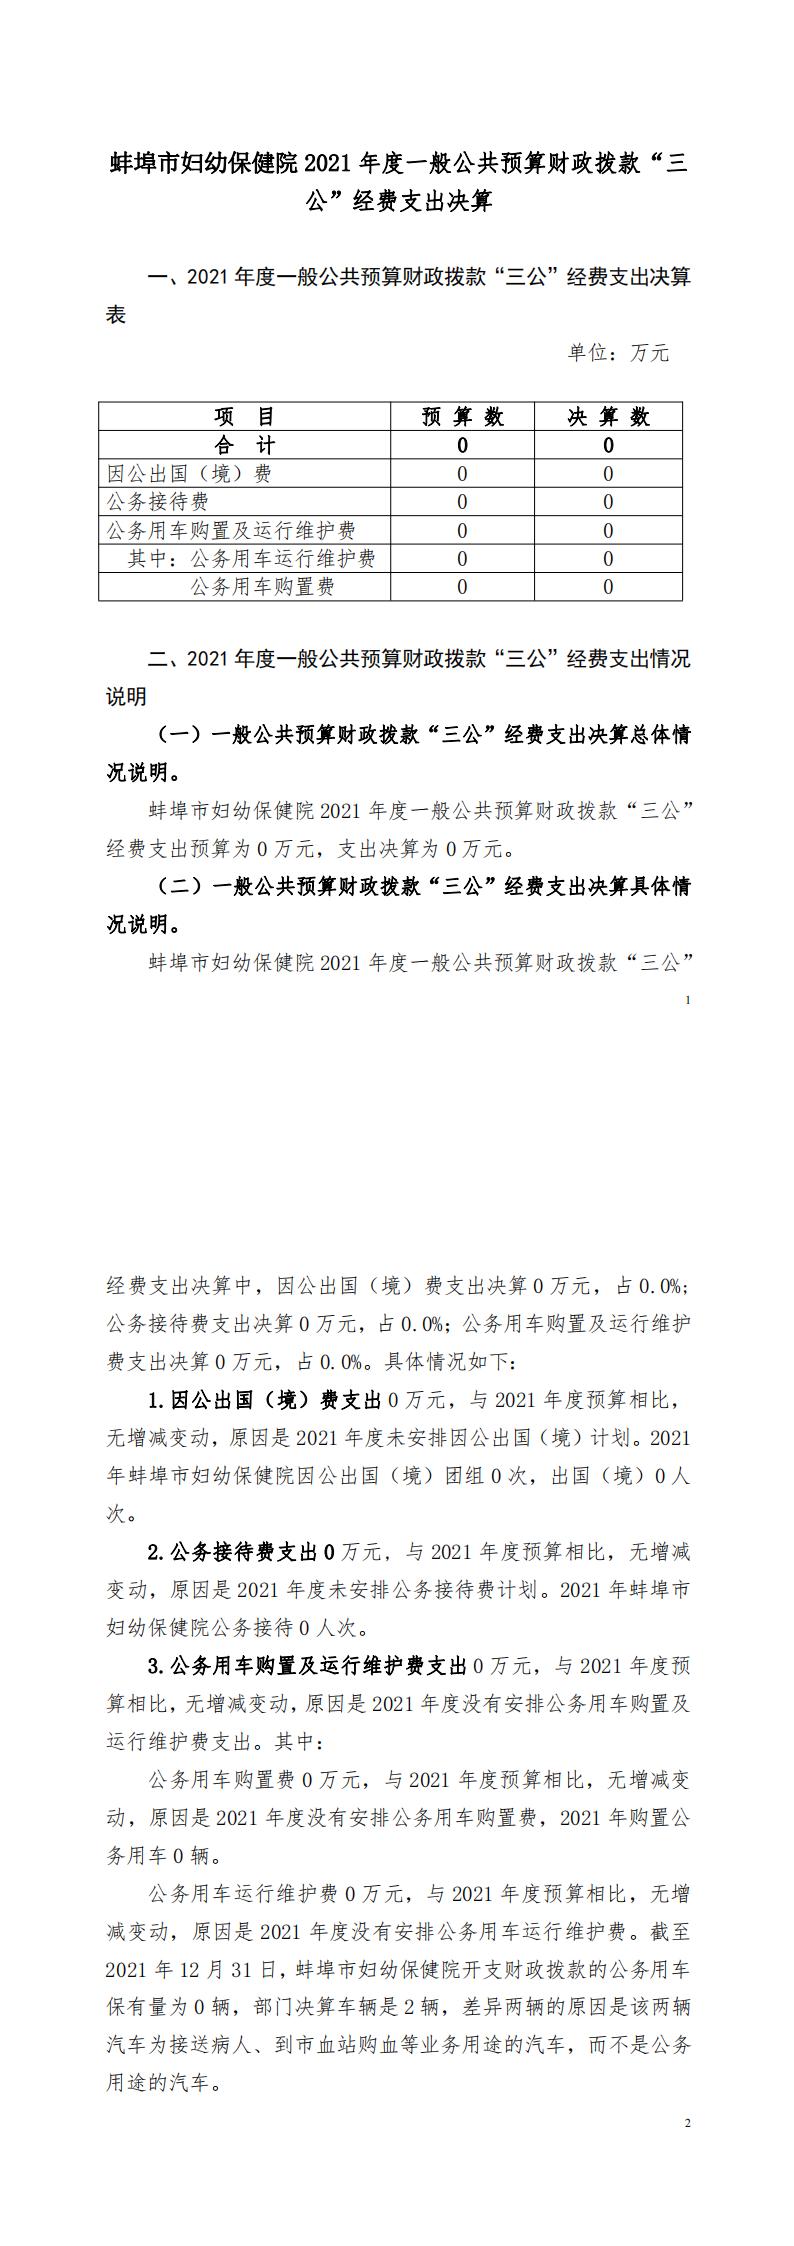 蚌埠市妇幼保健院2021决算三公公开报告_00.jpg